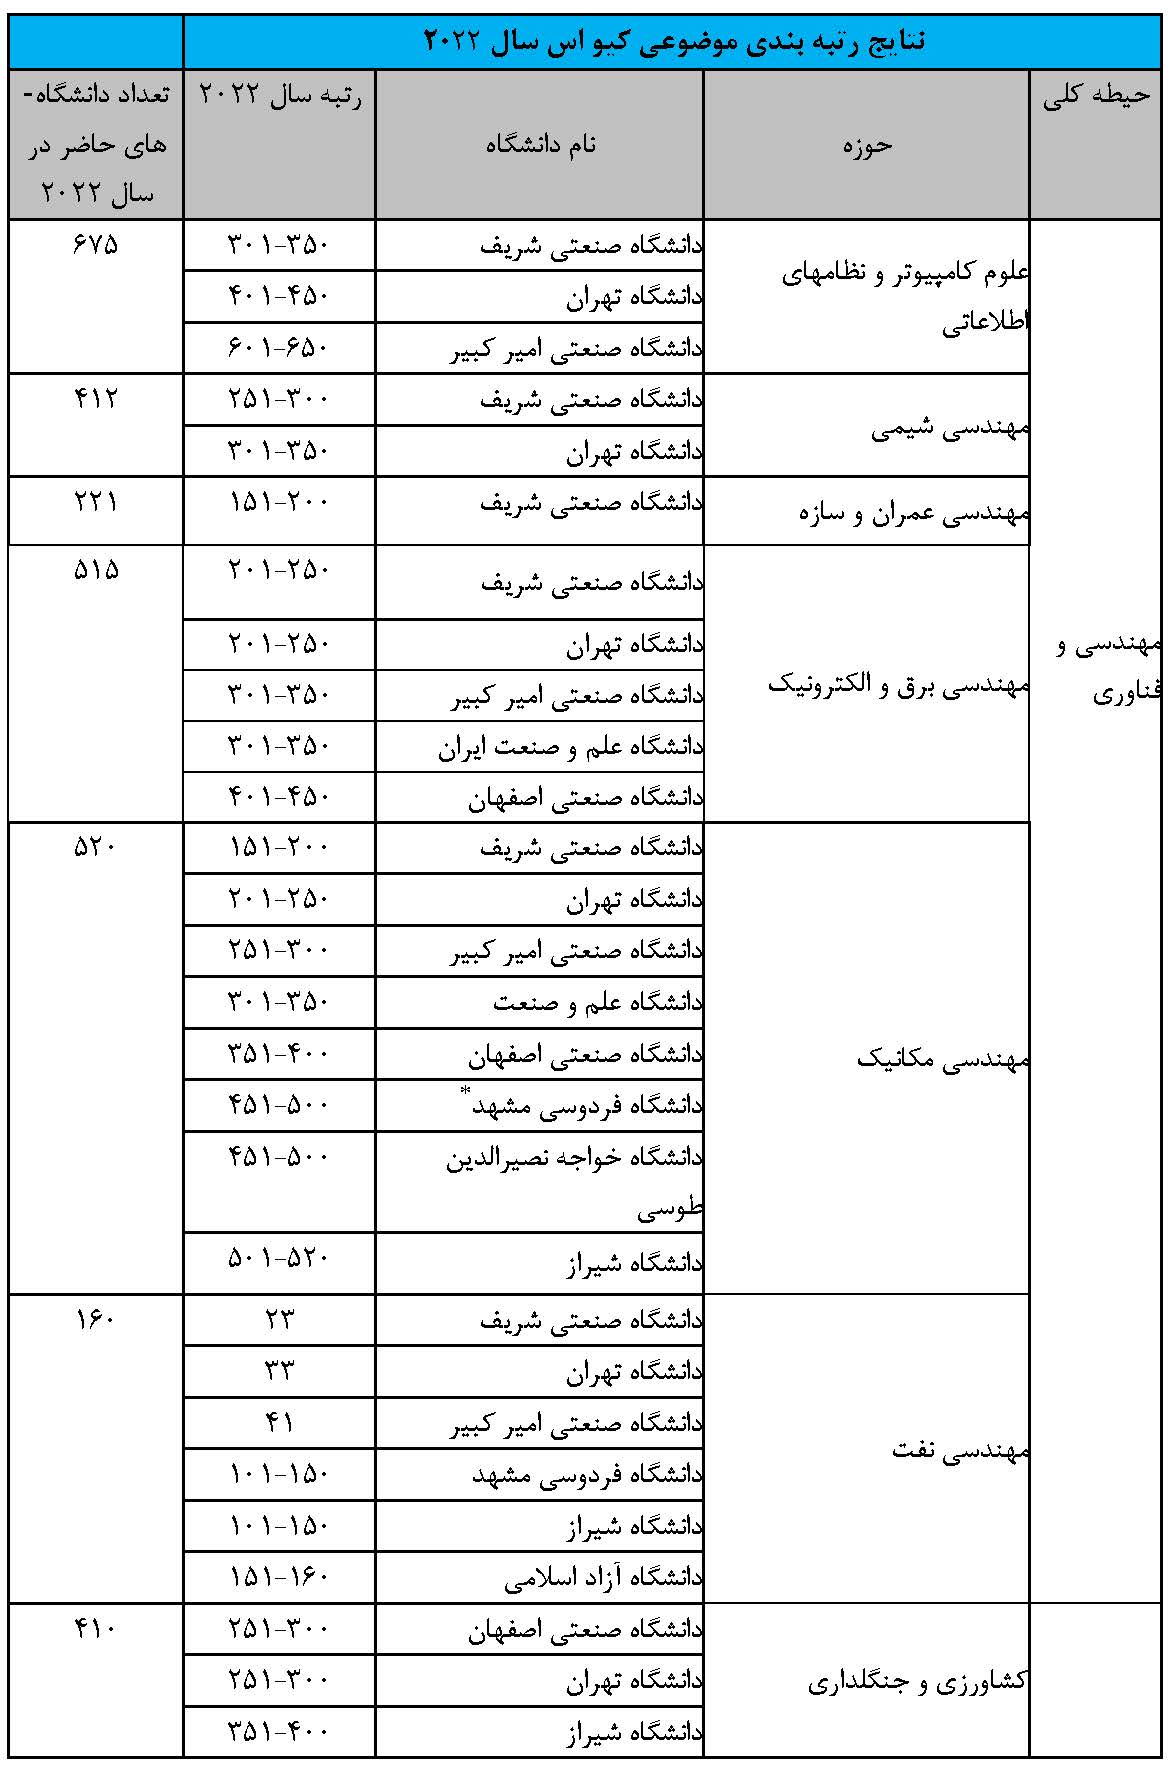 حضور دانشگاه های ایرانی در رتبه بندی موضوعی «کیواس»/ رتبه دانشگاه های ایران در 18 حیطه موضوعی در سال 2022